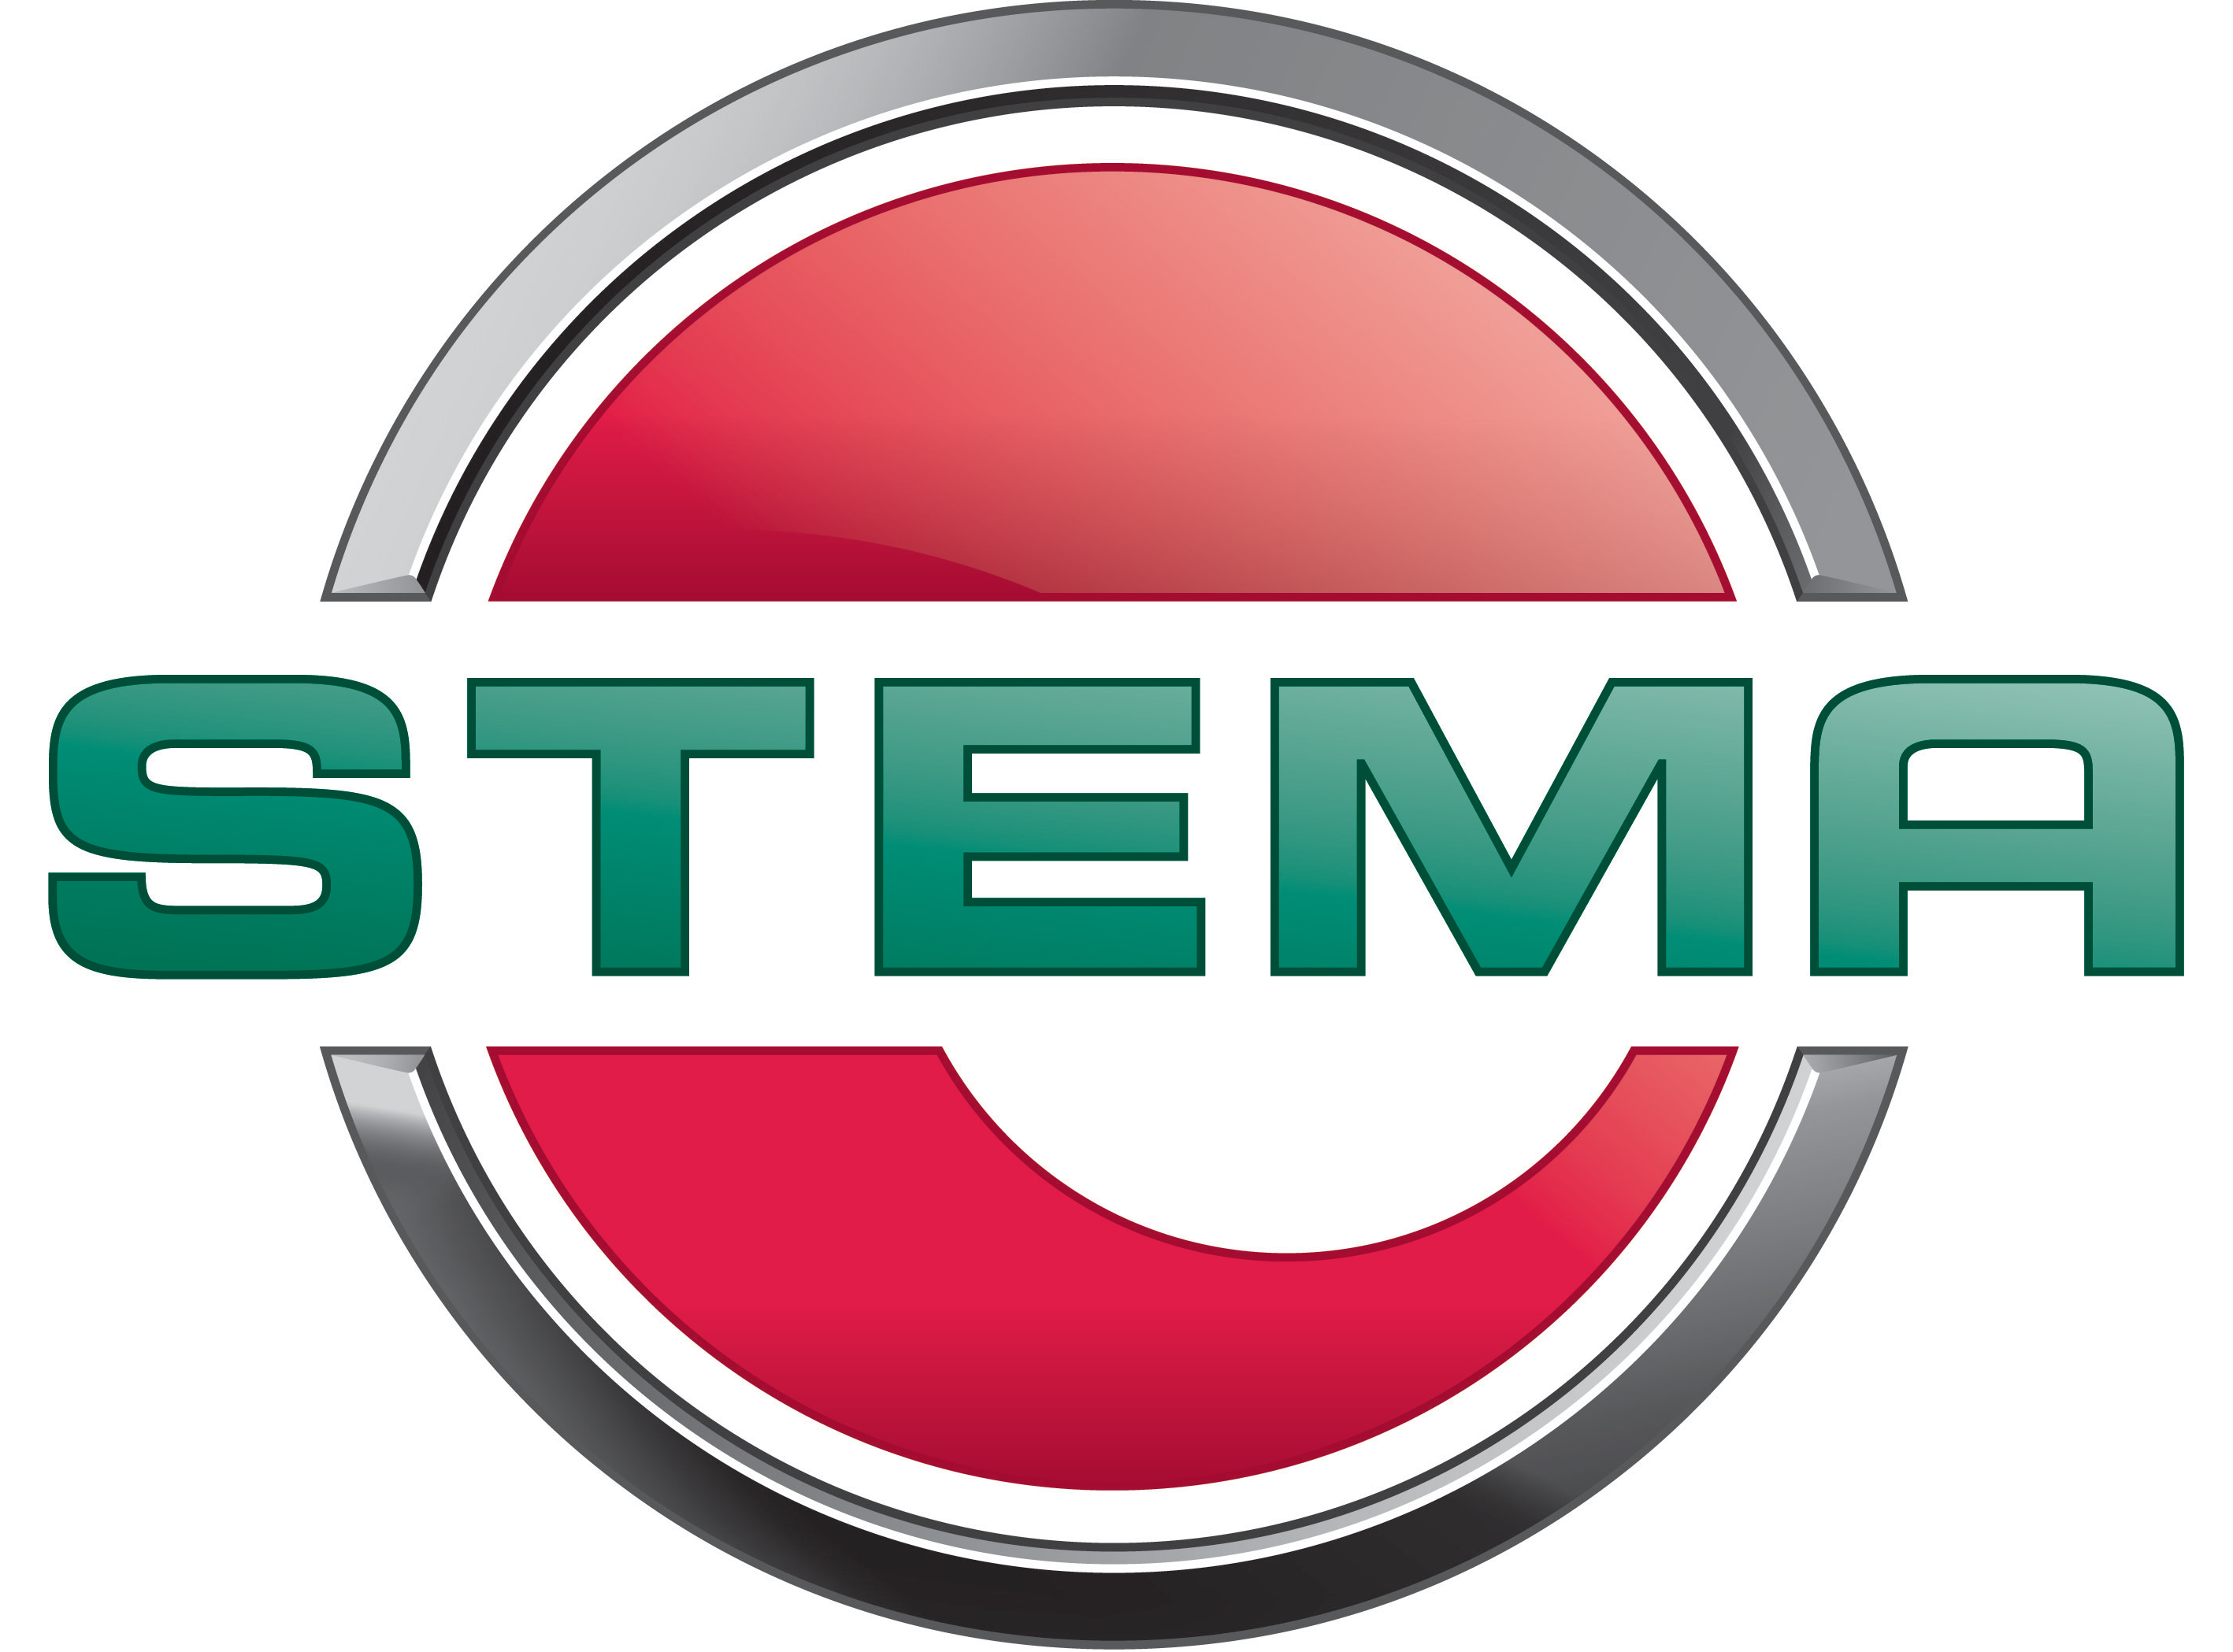 Planenanhänger STEMA BASIC 750kg 201x108x113cm preiswert online kaufen